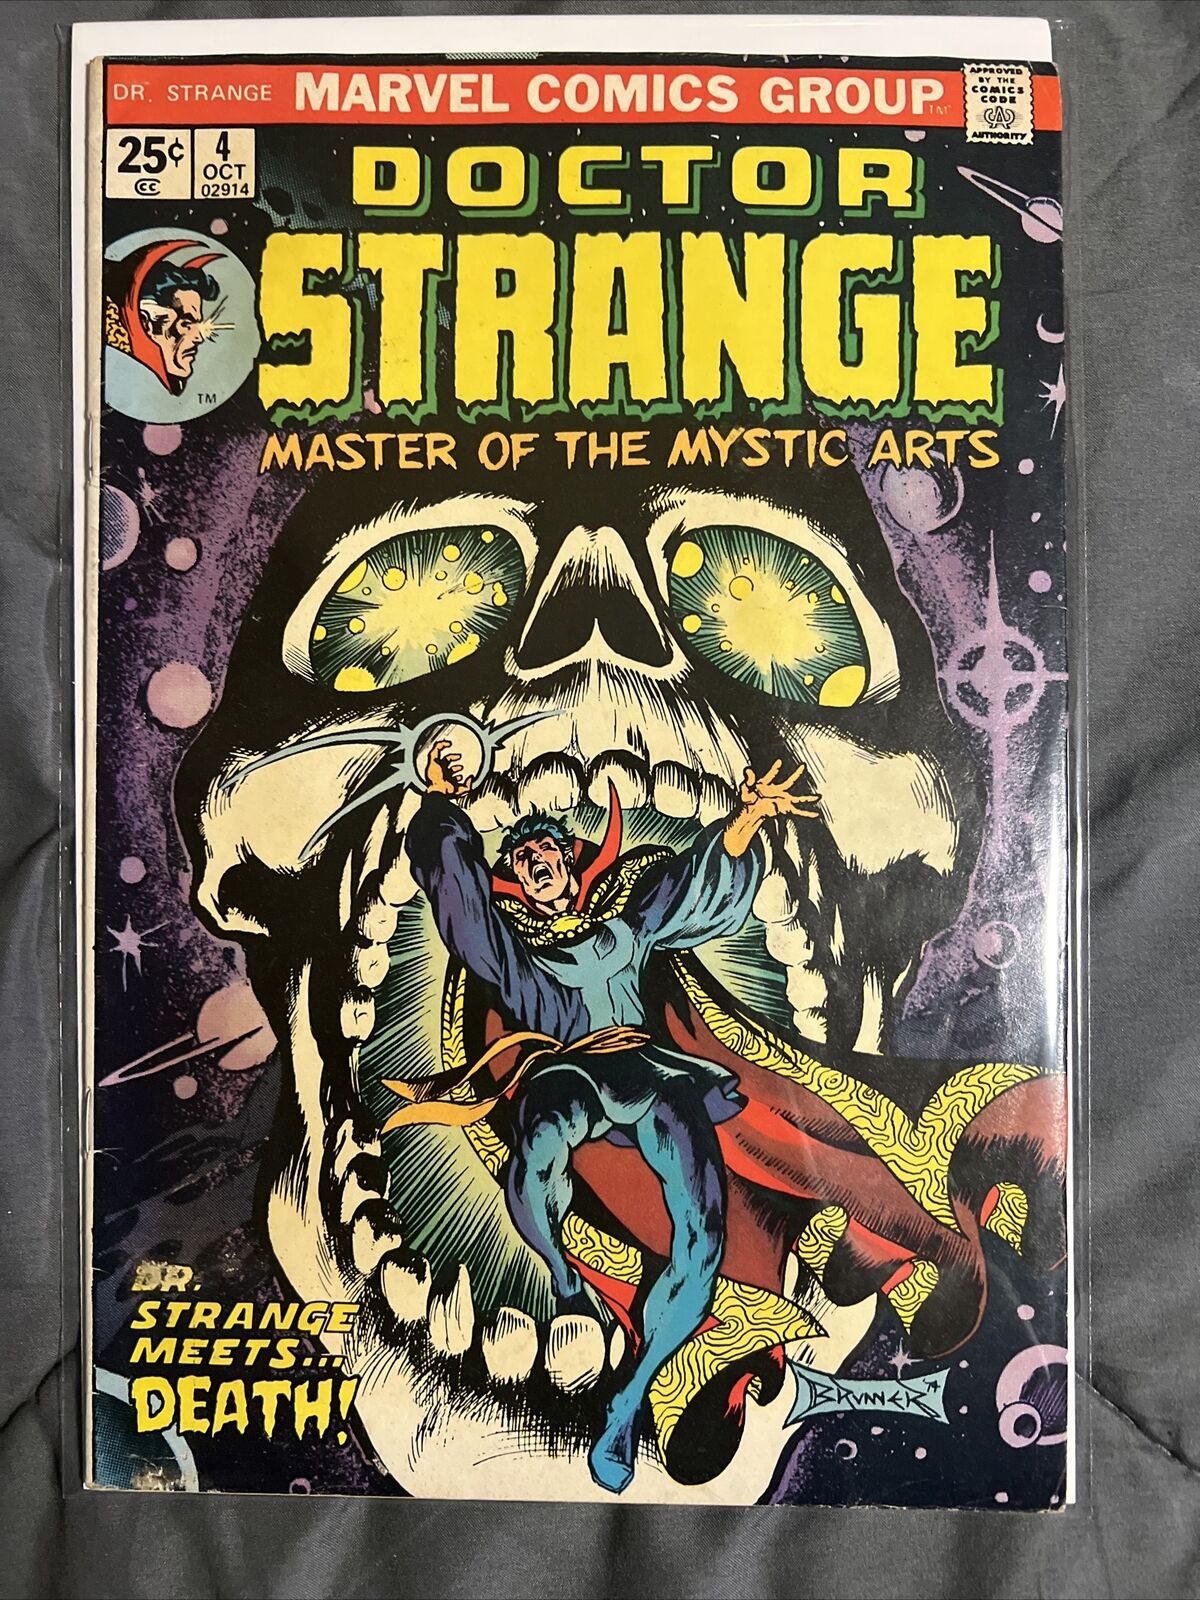 Marvel Comics Doctor Strange #4 October 1974 Frank Brunner Art